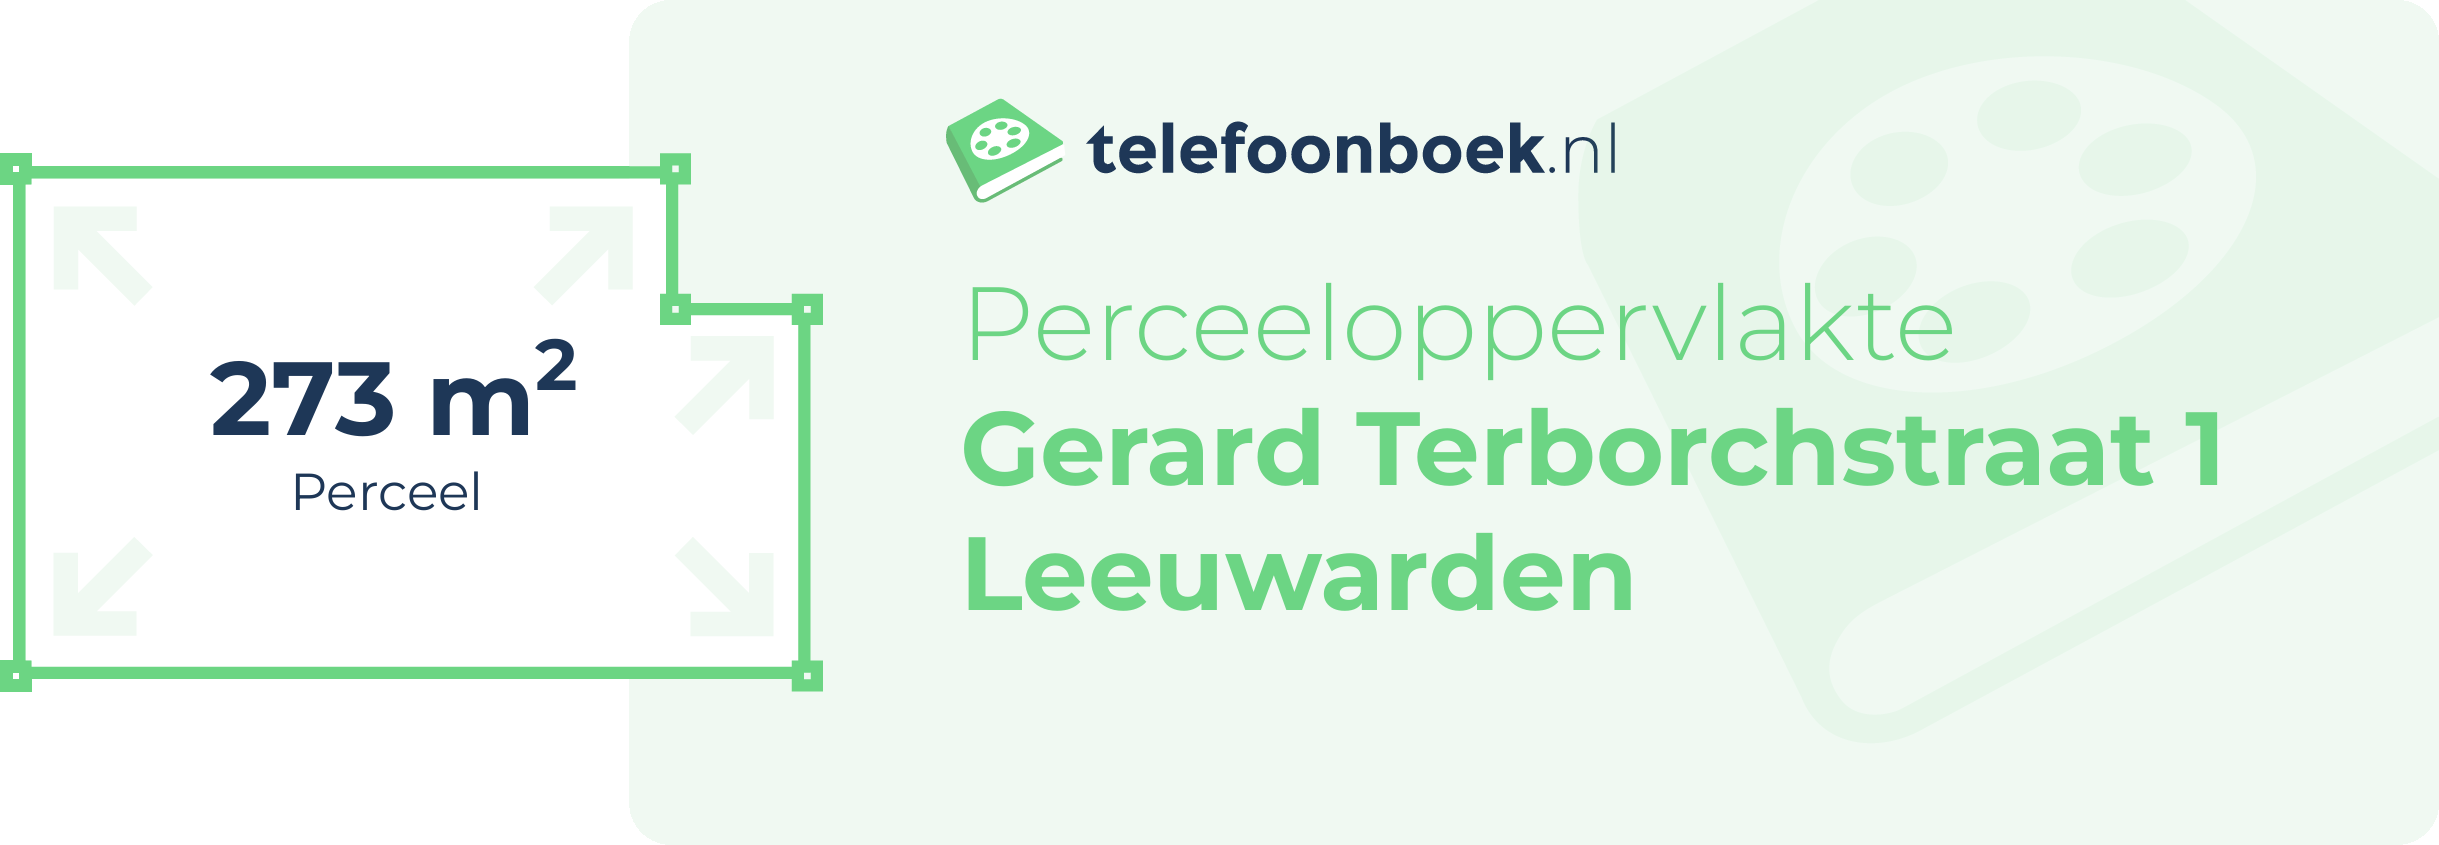 Perceeloppervlakte Gerard Terborchstraat 1 Leeuwarden